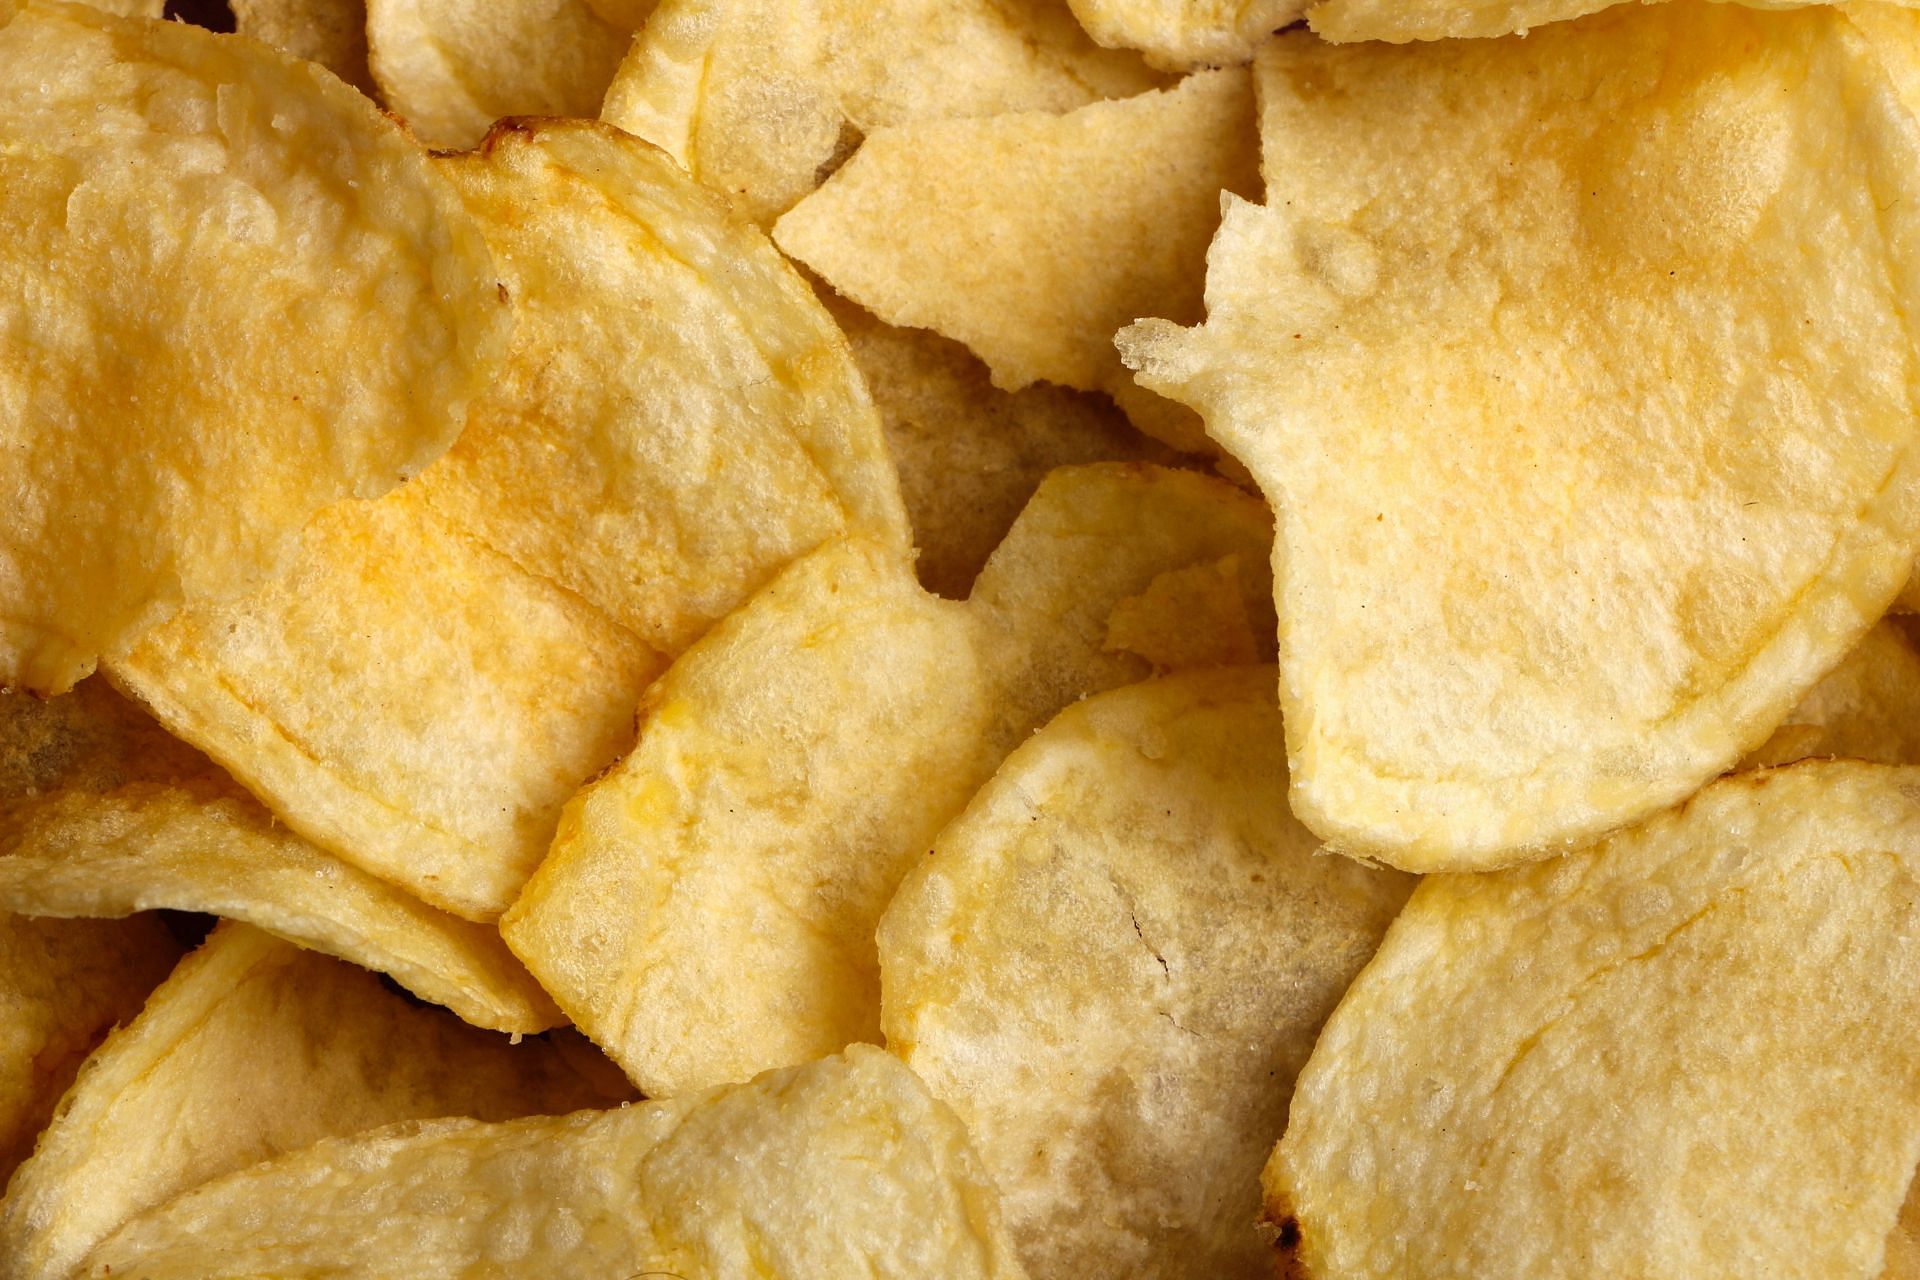 Potato chips contain harmful oils and chemicals (Image via Unsplash/Mustafa Bashari)